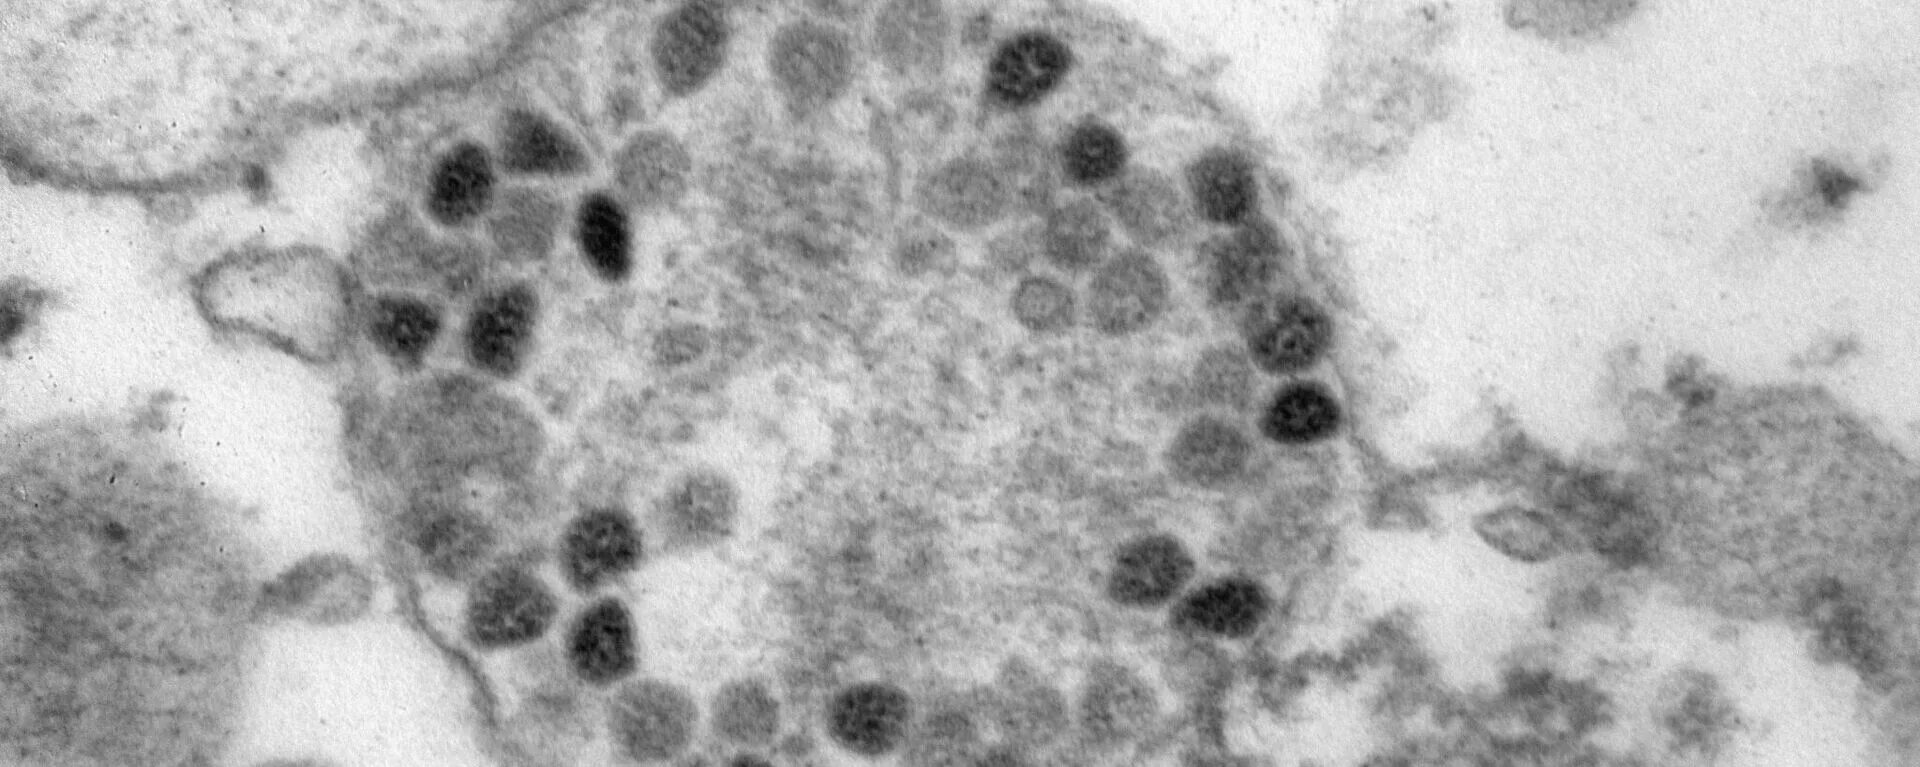 Коронавирус штаммы омикрон. Омикрон коронавирус. Новый вирус Омикрон.